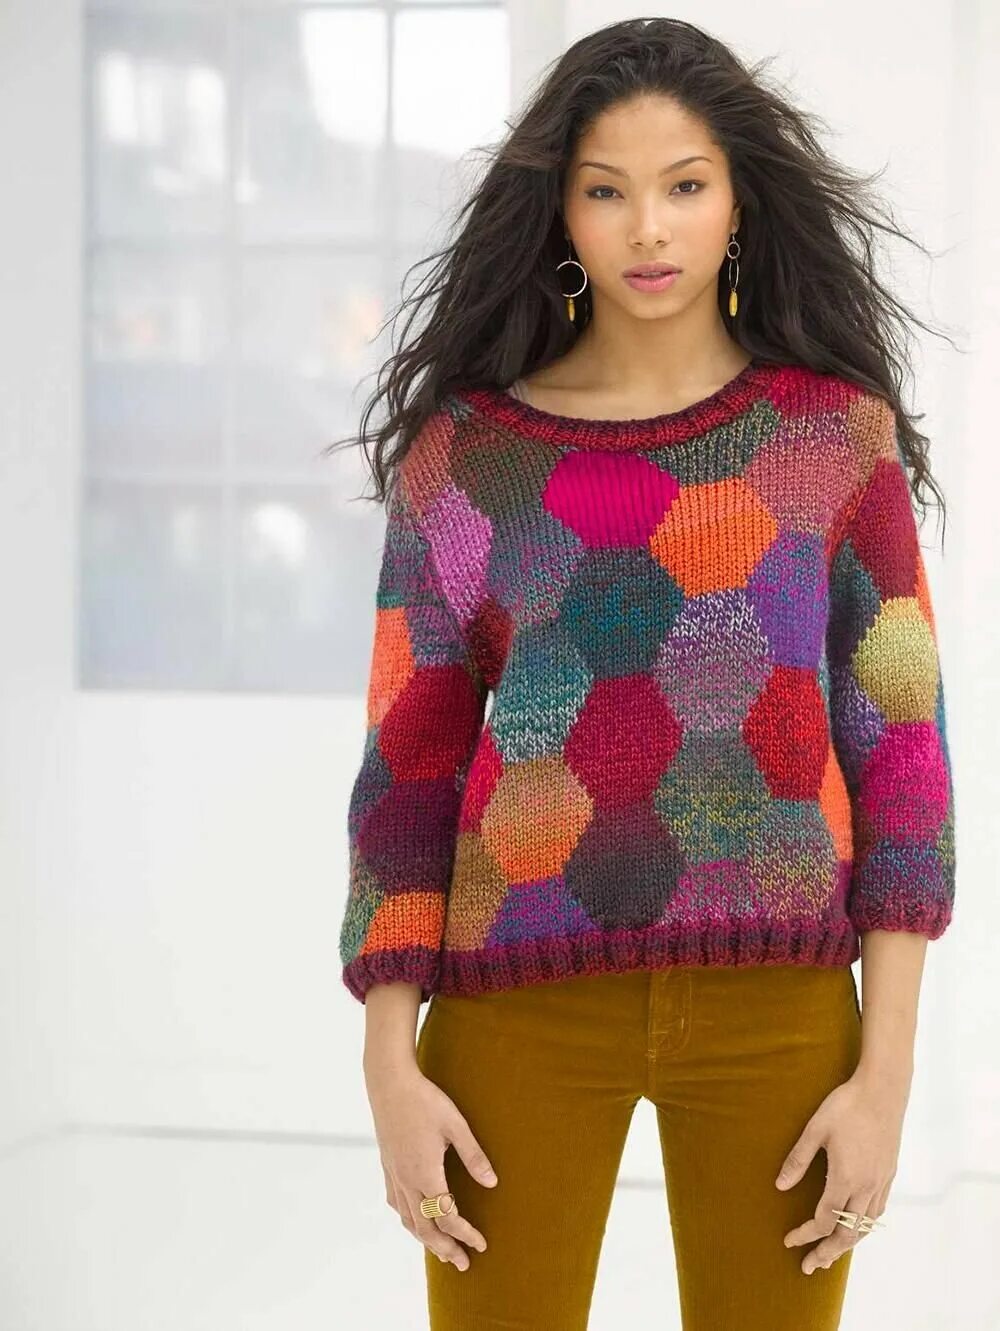 Цветной свитер. Яркий свитер. Цветная кофта. Разноцветный свитер.